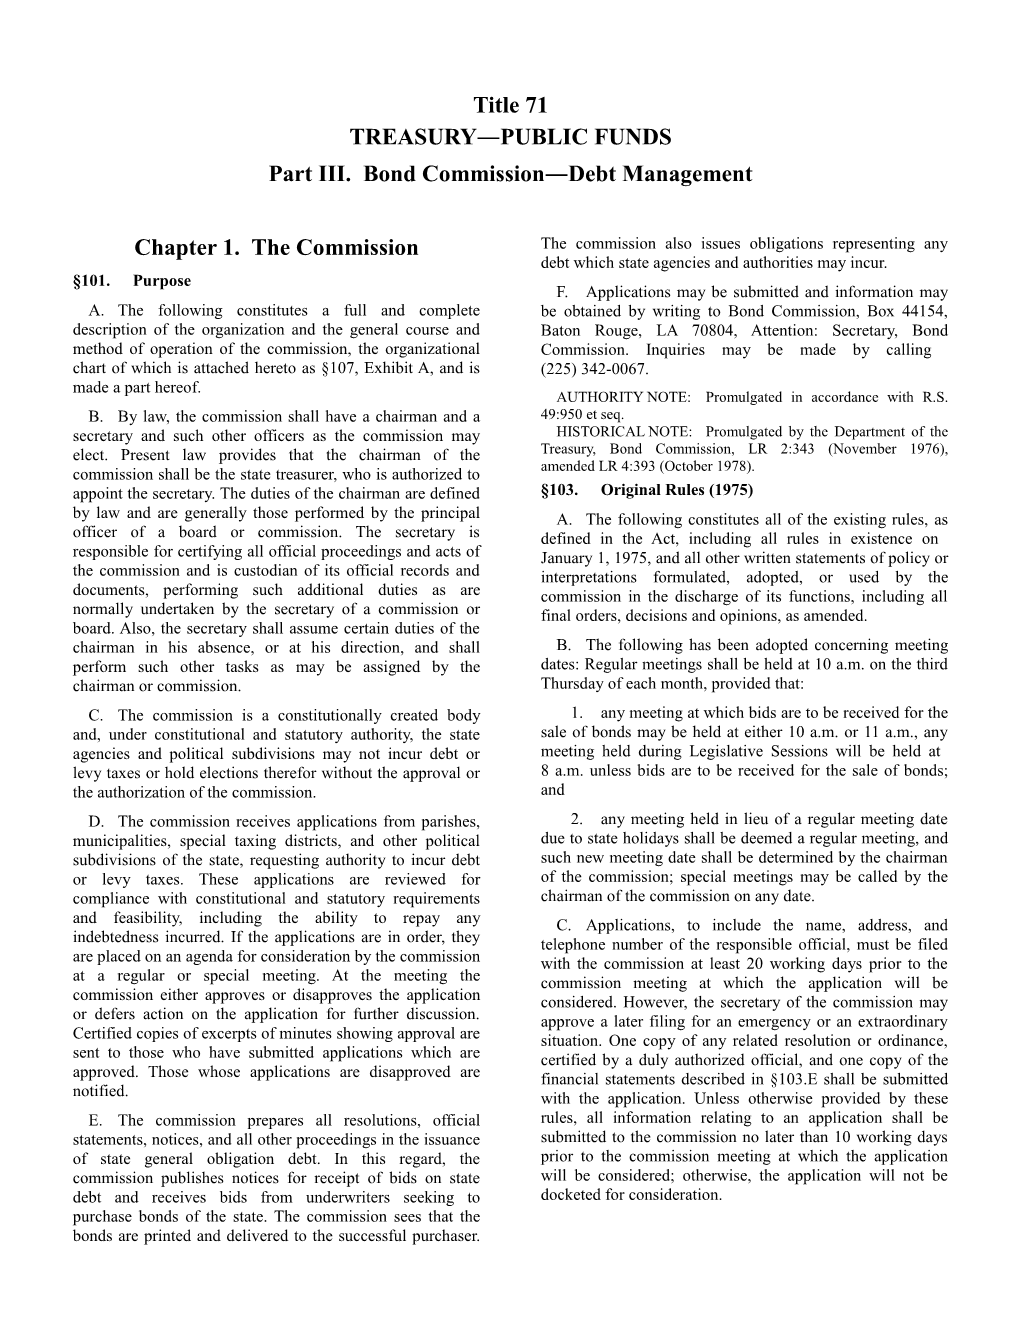 Part III. Bond Commission Debt Management